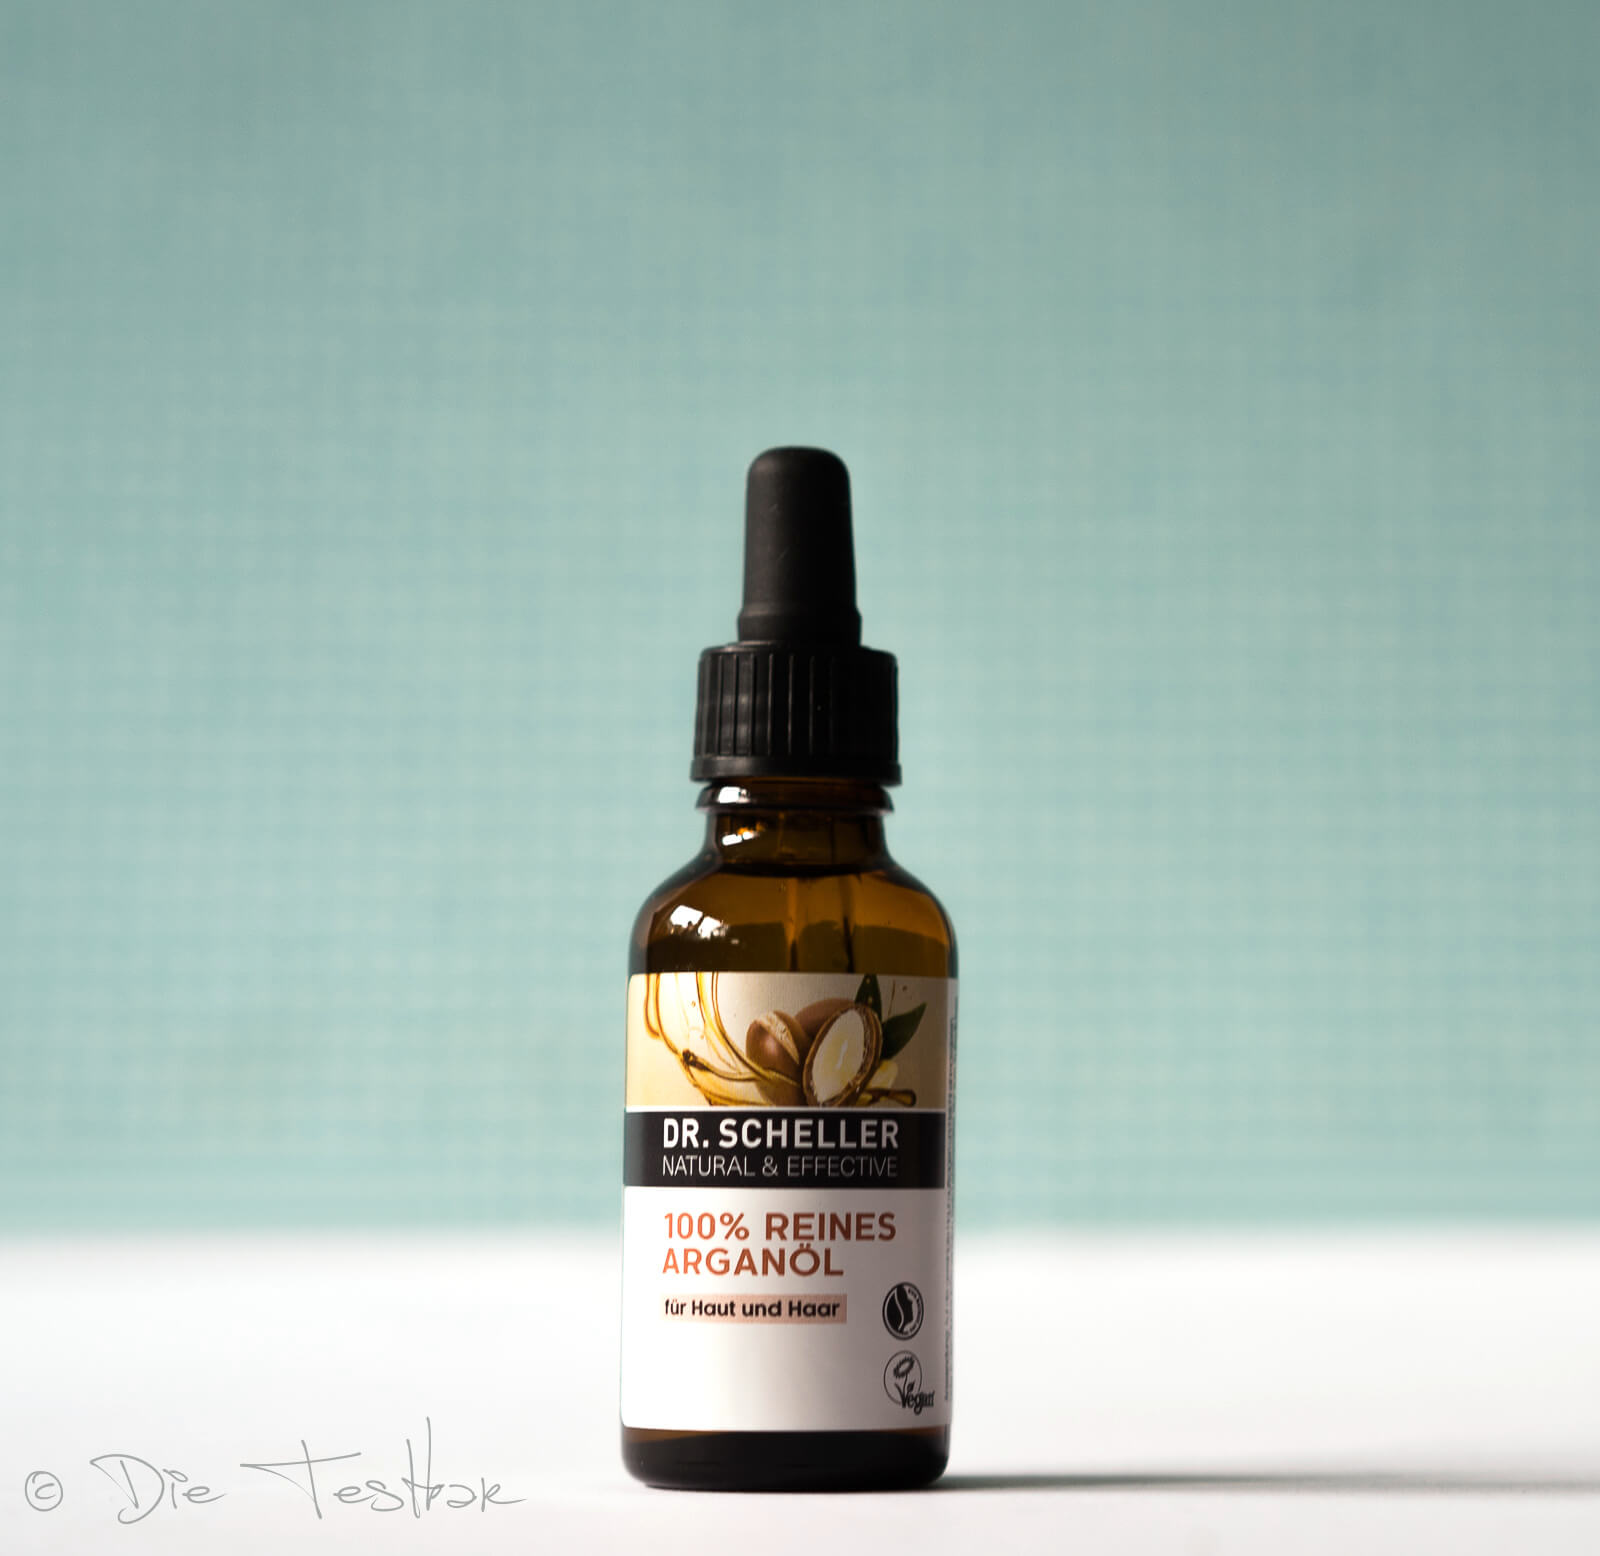 Beautygeheimnis - Reines Bio Arganöl von Dr. Scheller - Das flüssige Gold Marokkos für die Haut- und Haarpflege 